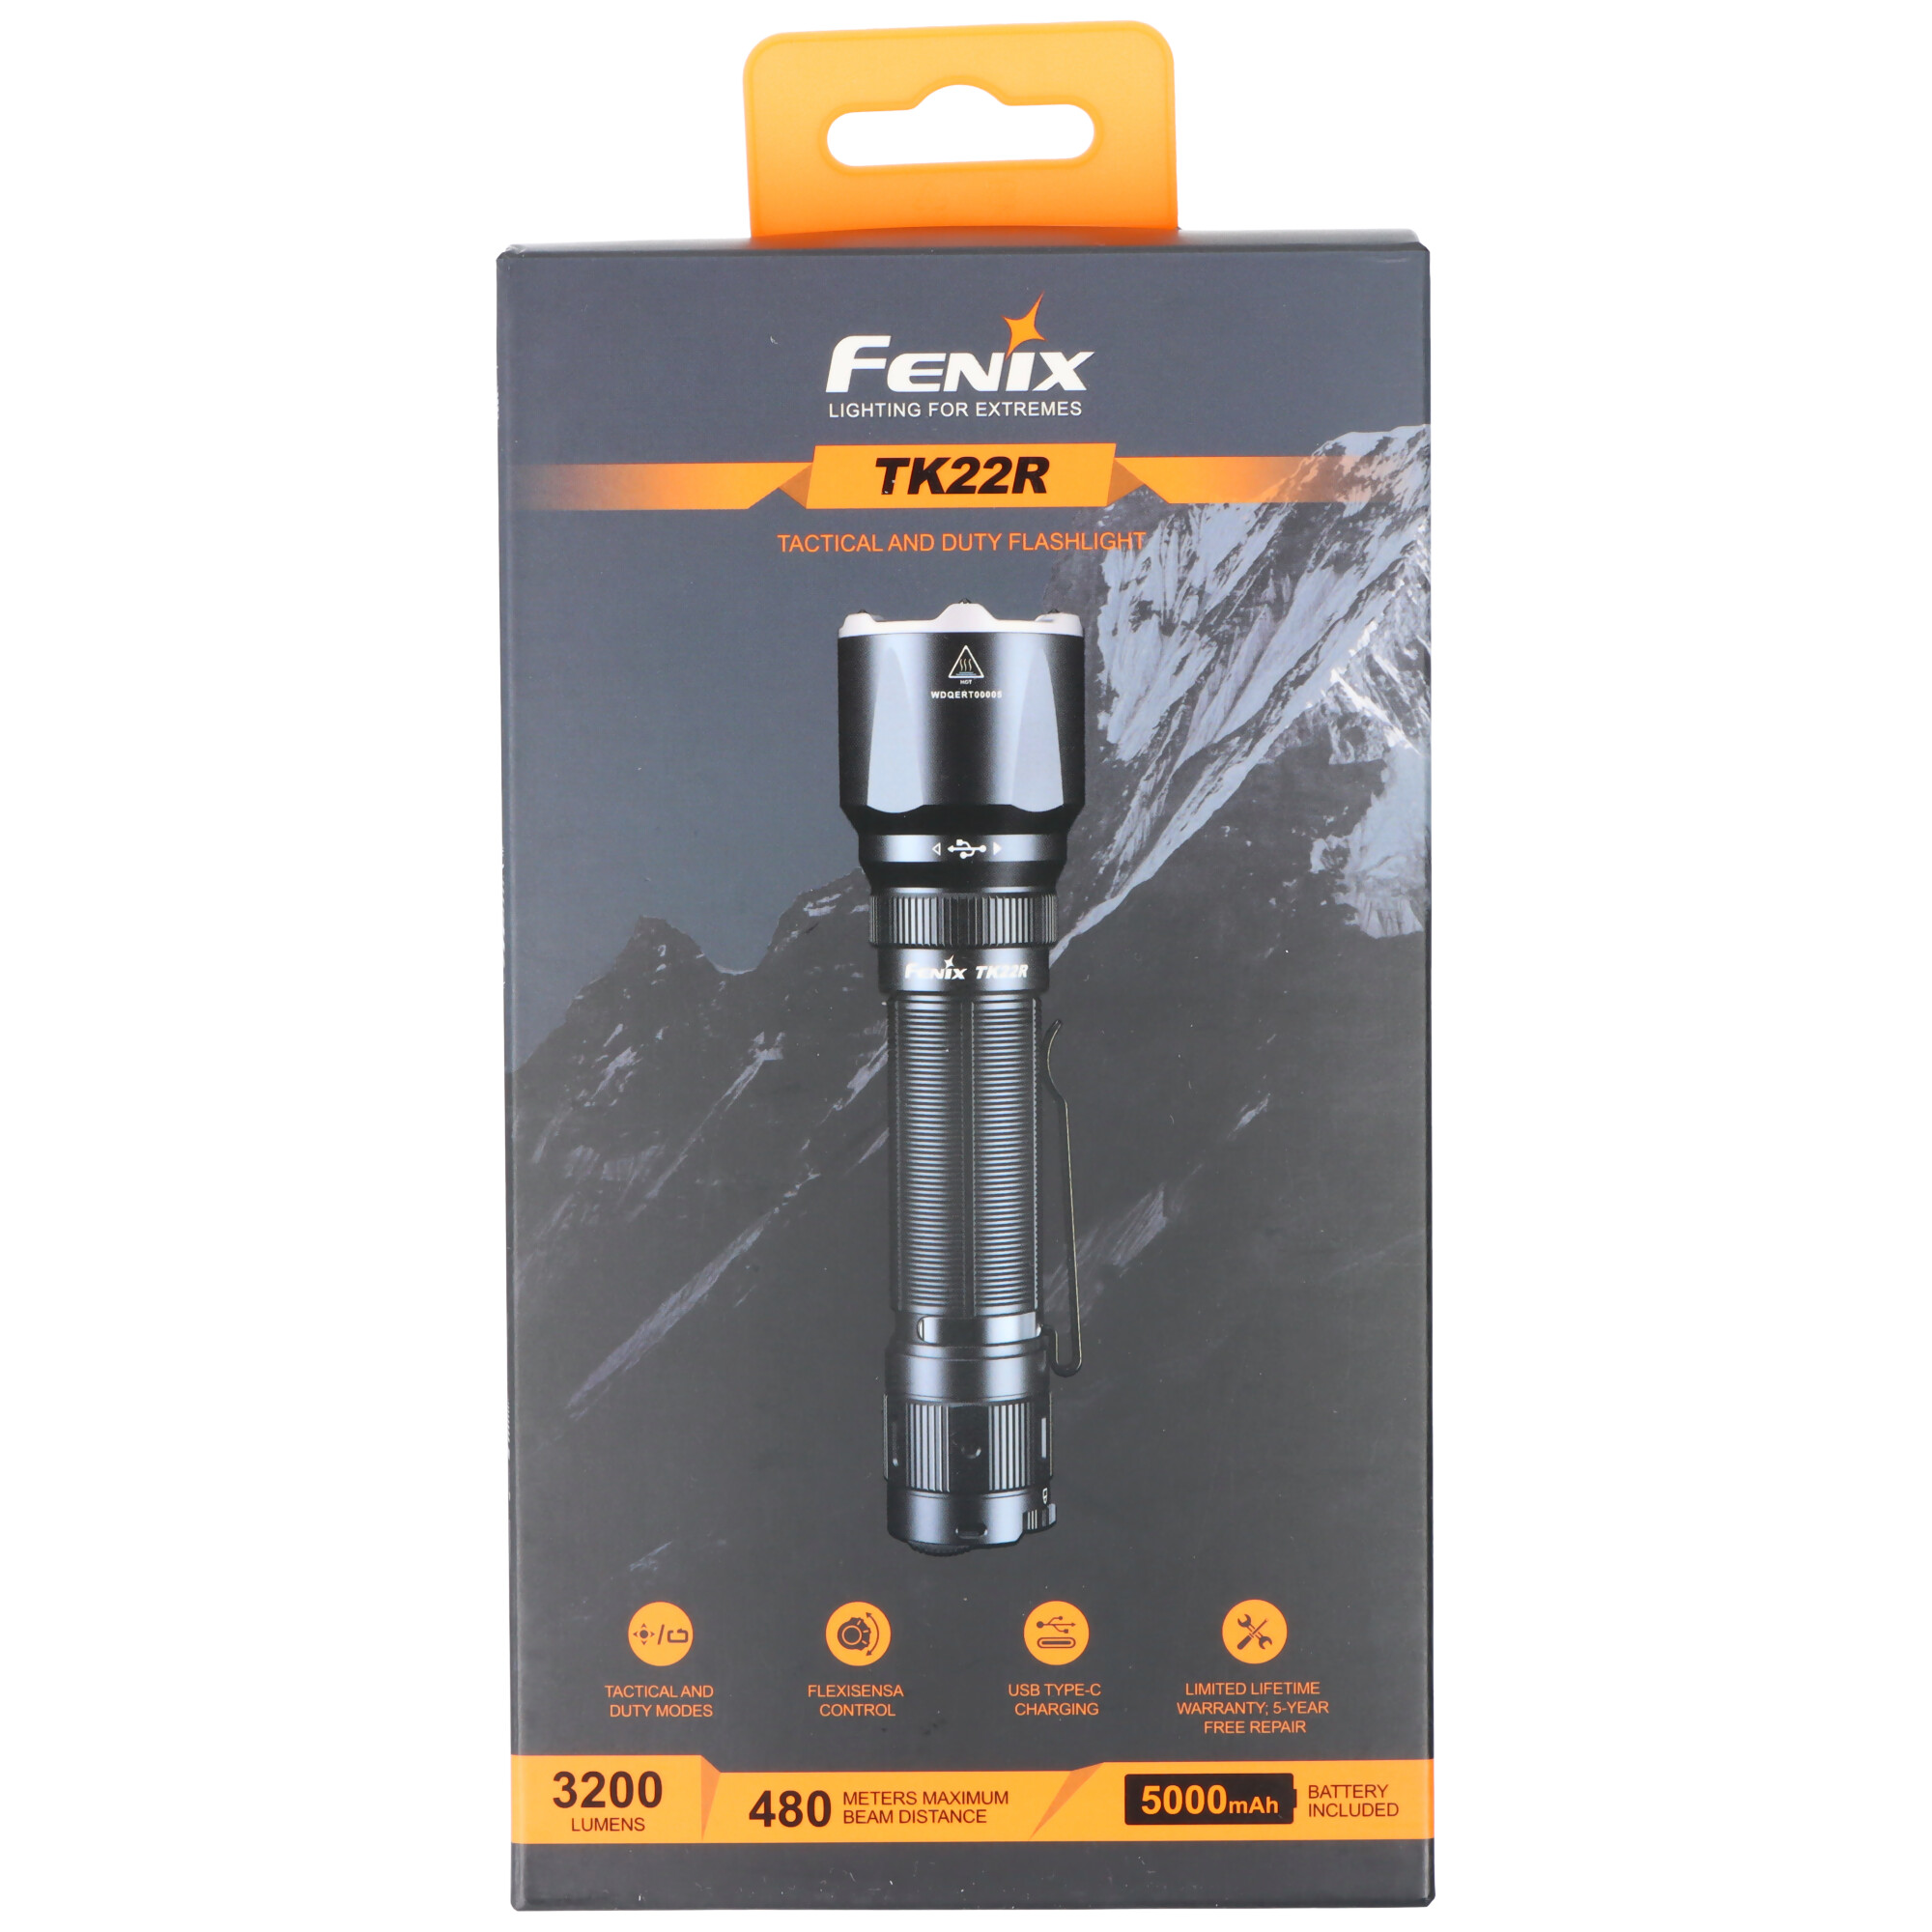 Fenix TK22R LED-Taschenlampe mit bis zu 3200 Lumen, 480 Meter Leuchtweite, taktische Taschenlampe mit FlexiSensa Control-Schalter